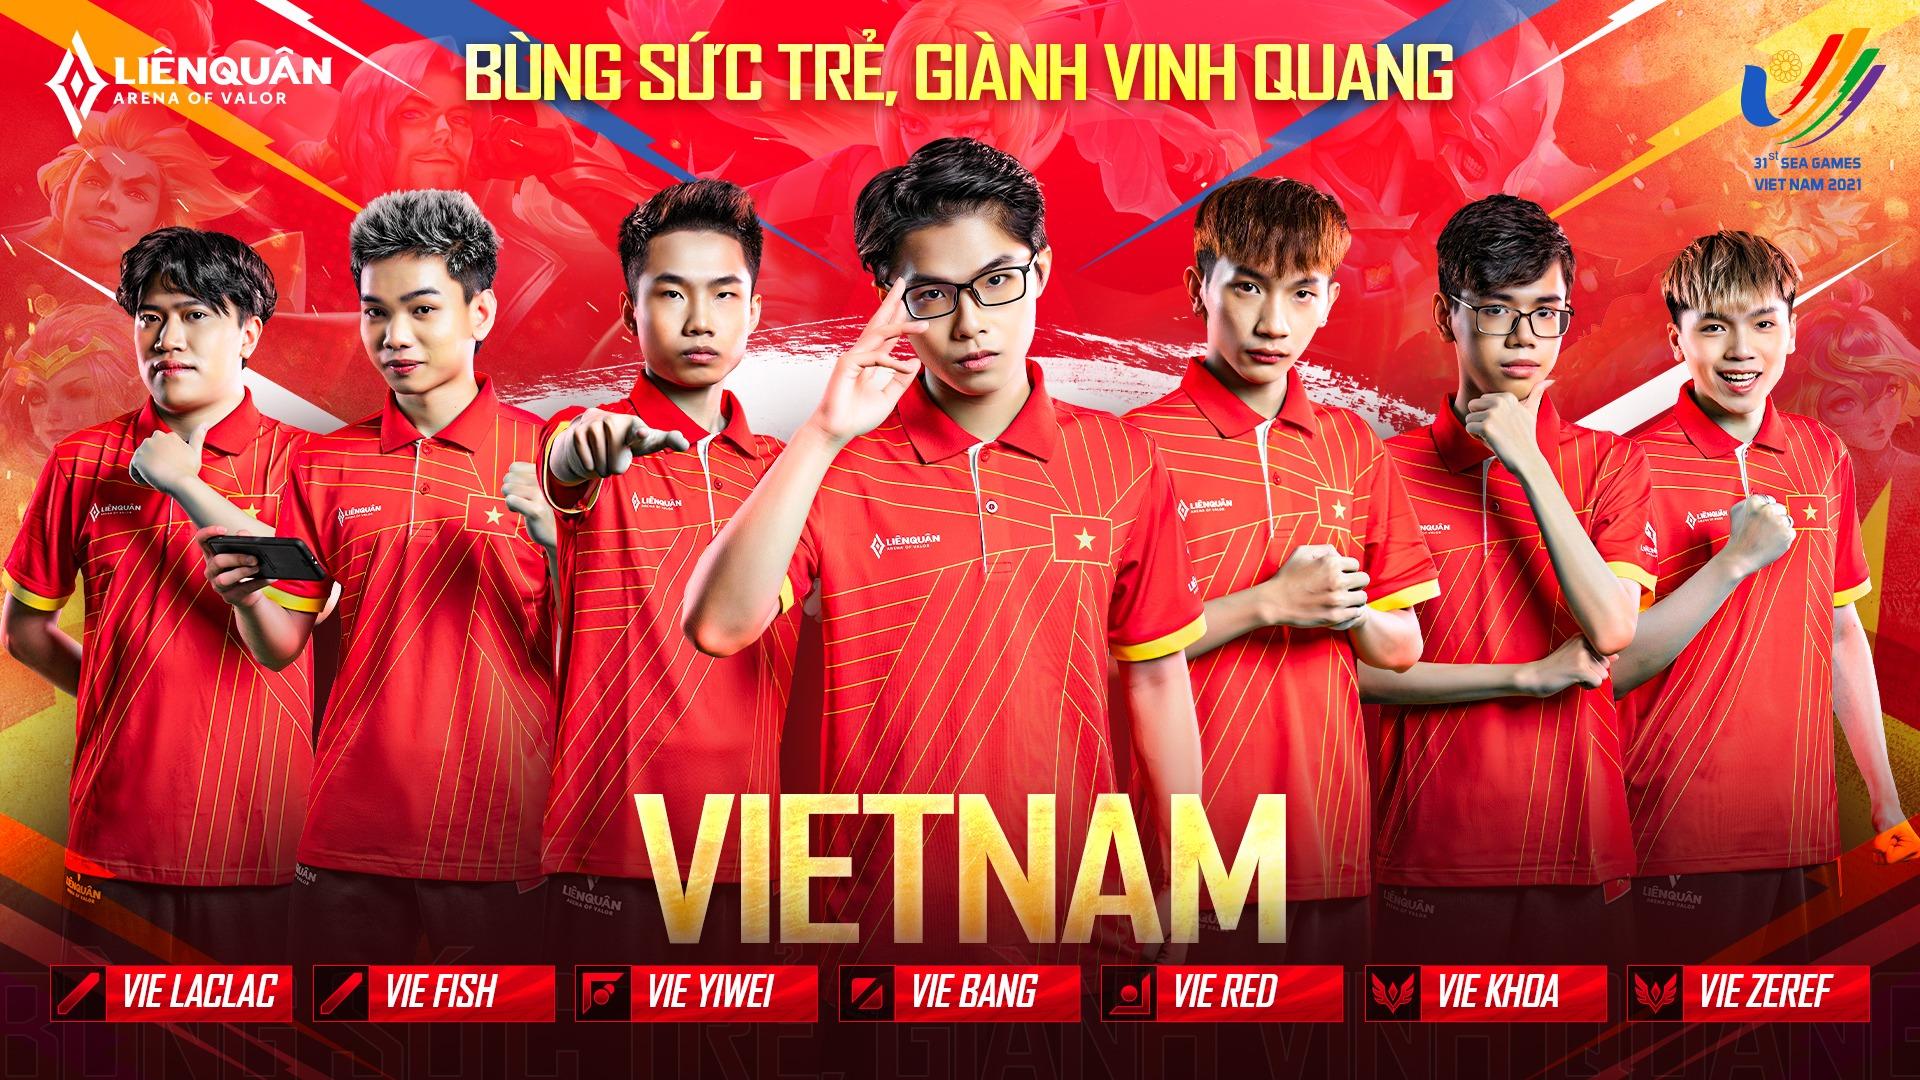 SEA Games 31: Cơ hội vàng cho Esports Việt Nam